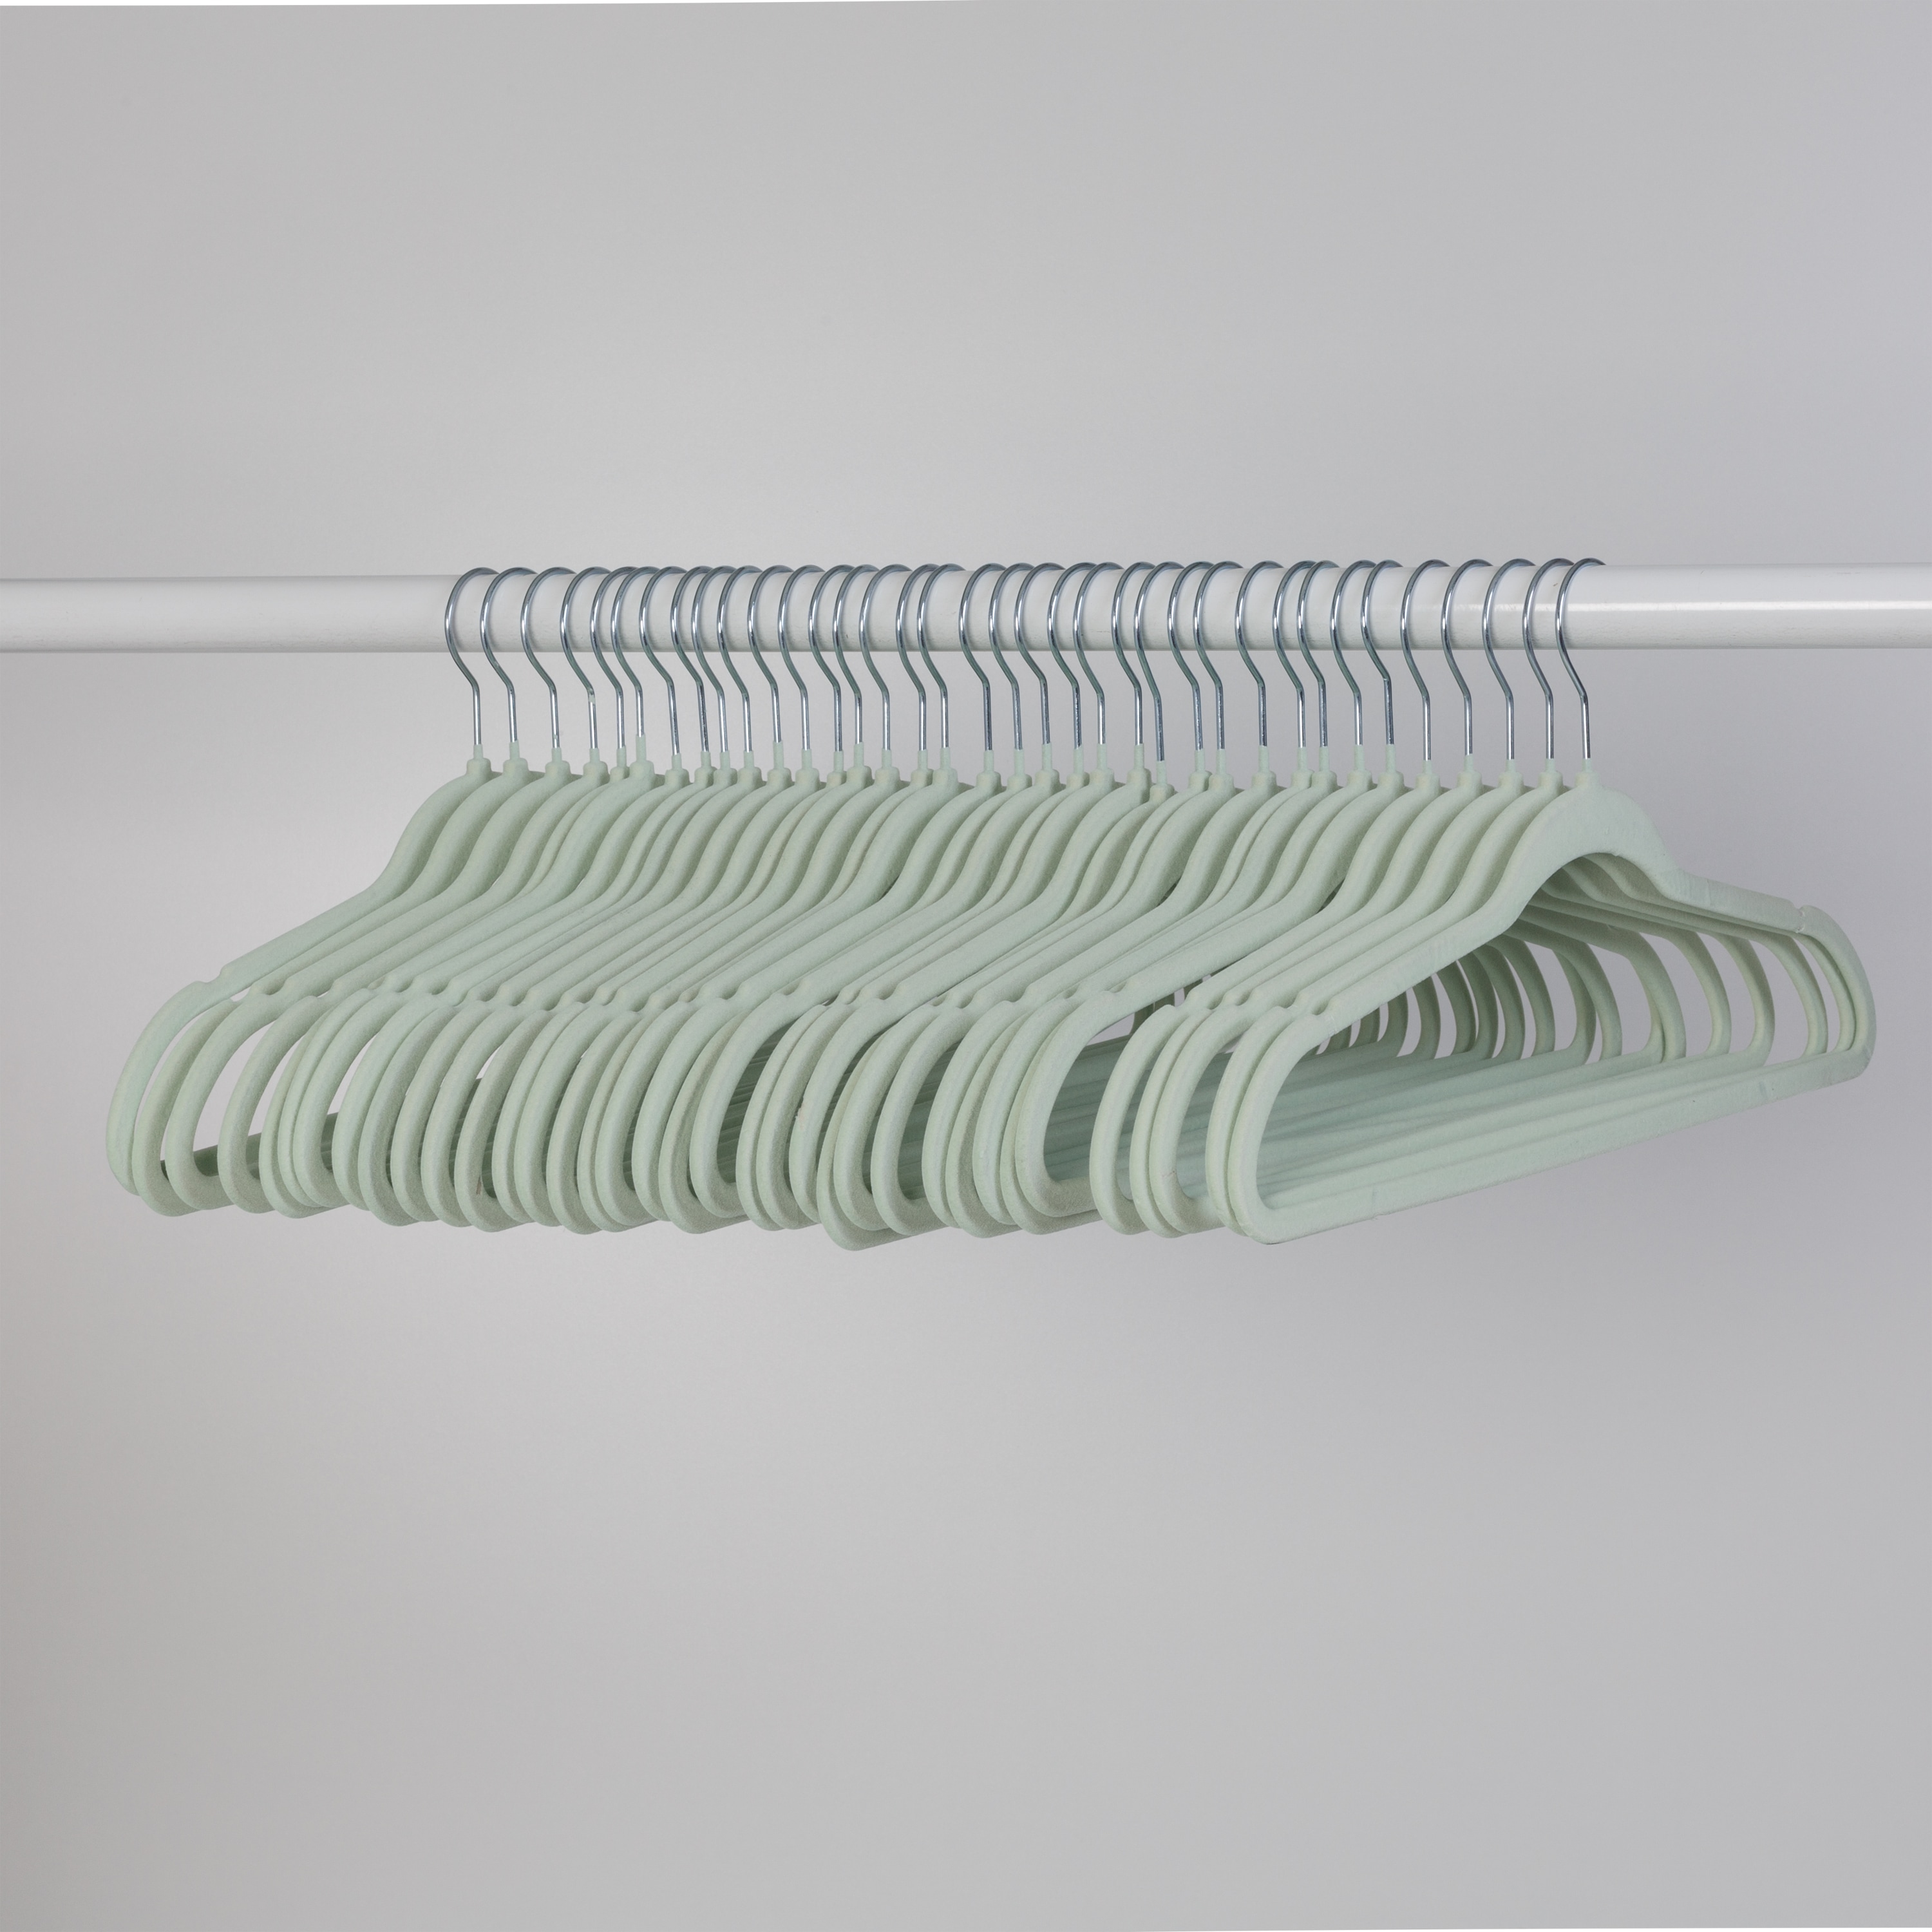 neatfreak 10-Pack Plastic Non-slip Grip Clothing Hanger (White and